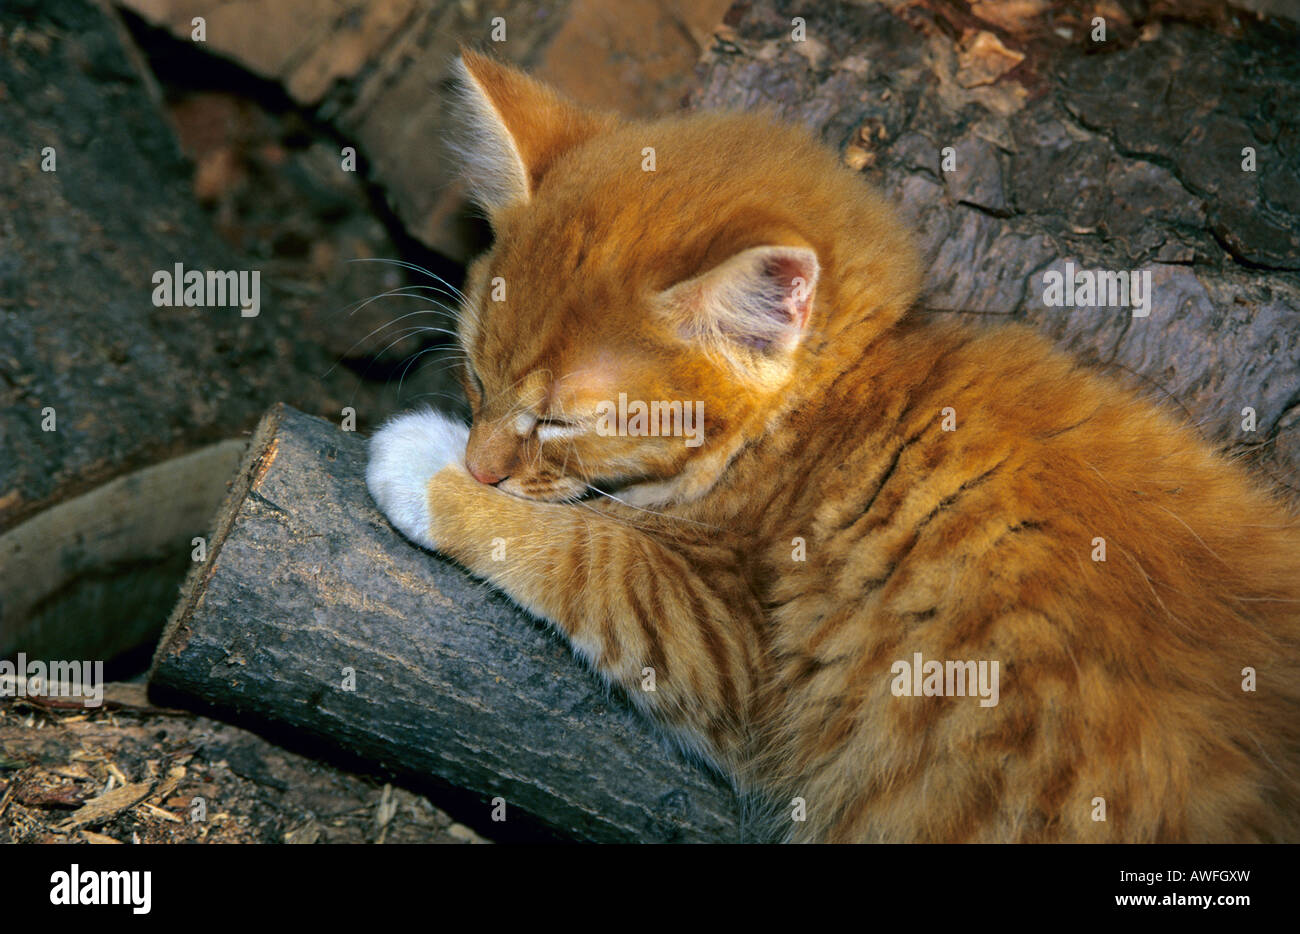 Orange tabby kitten sleeping on a woodpile Stock Photo